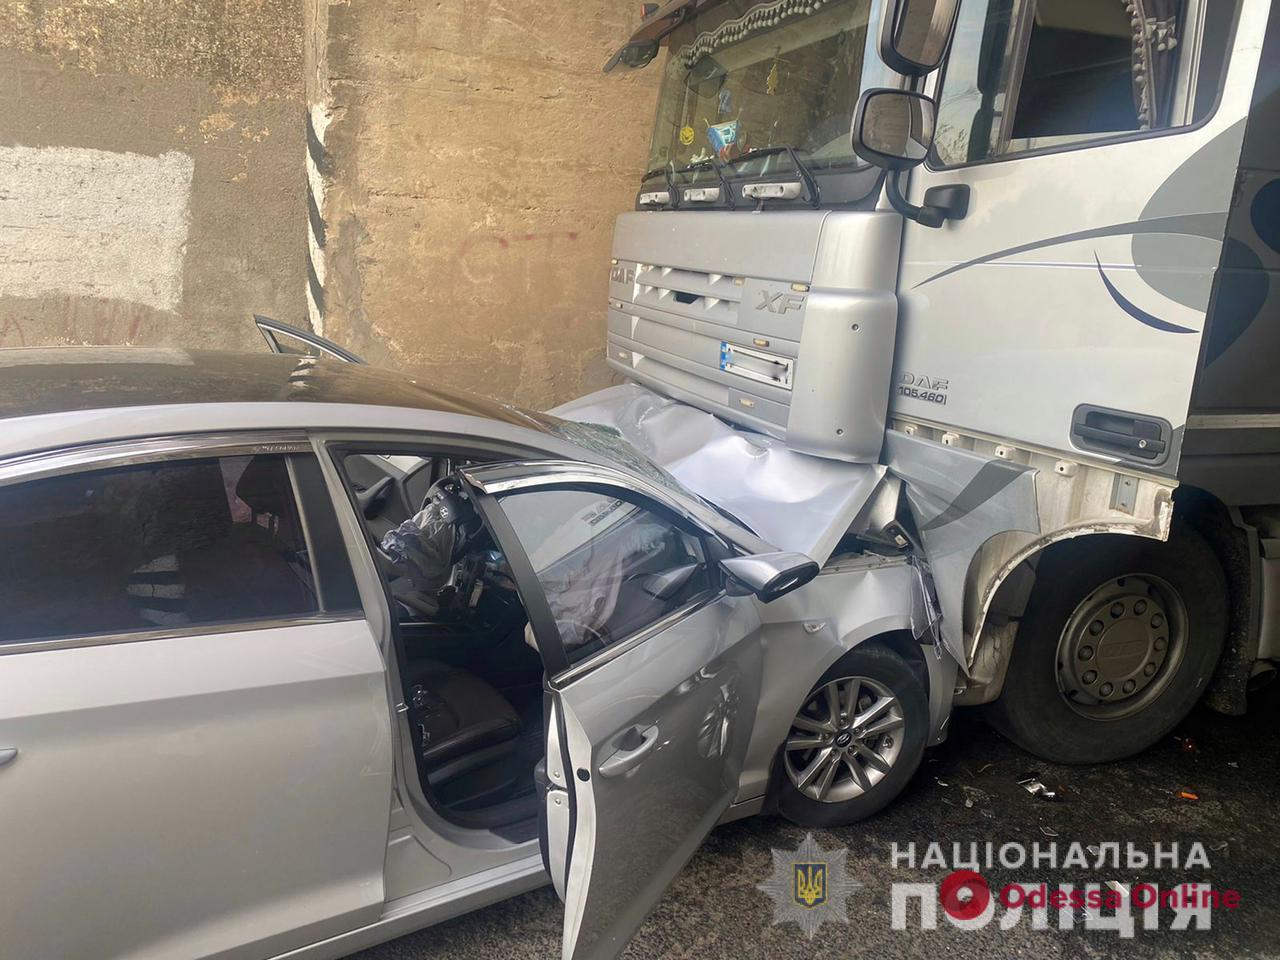 В Одесской области в тоннеле столкнулись легковушка и грузовик — трое пострадавших